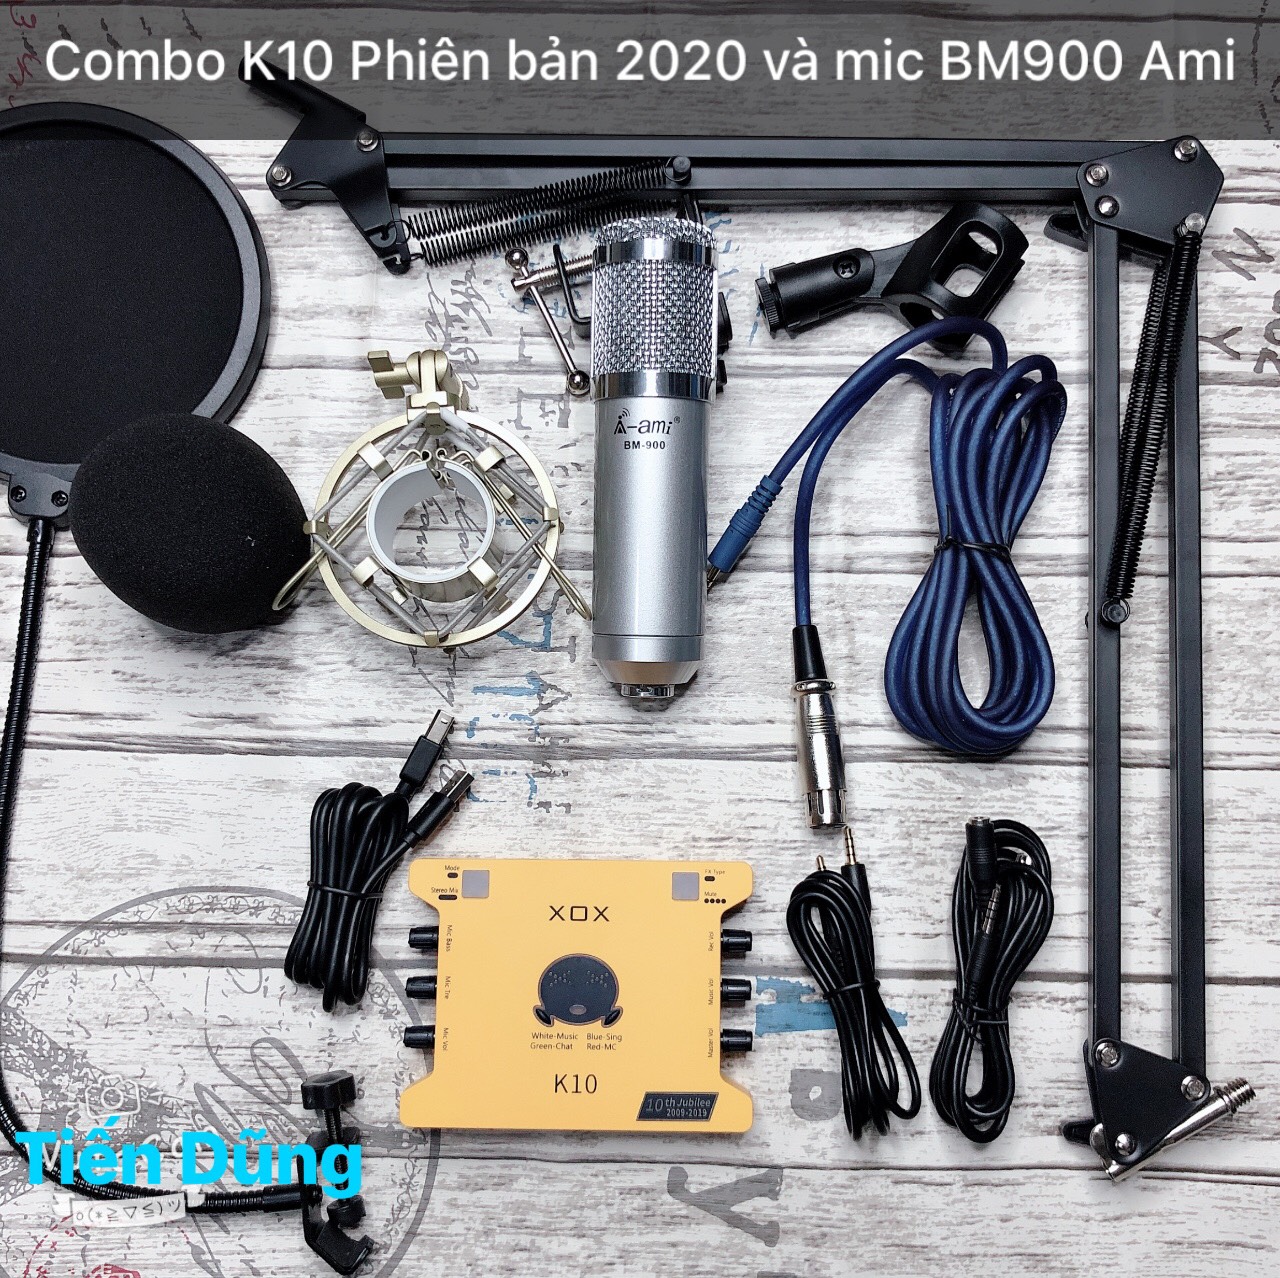 Mic livestream bm900 Ami Sound Card XOX K10 2020 chân màng đã có dây live